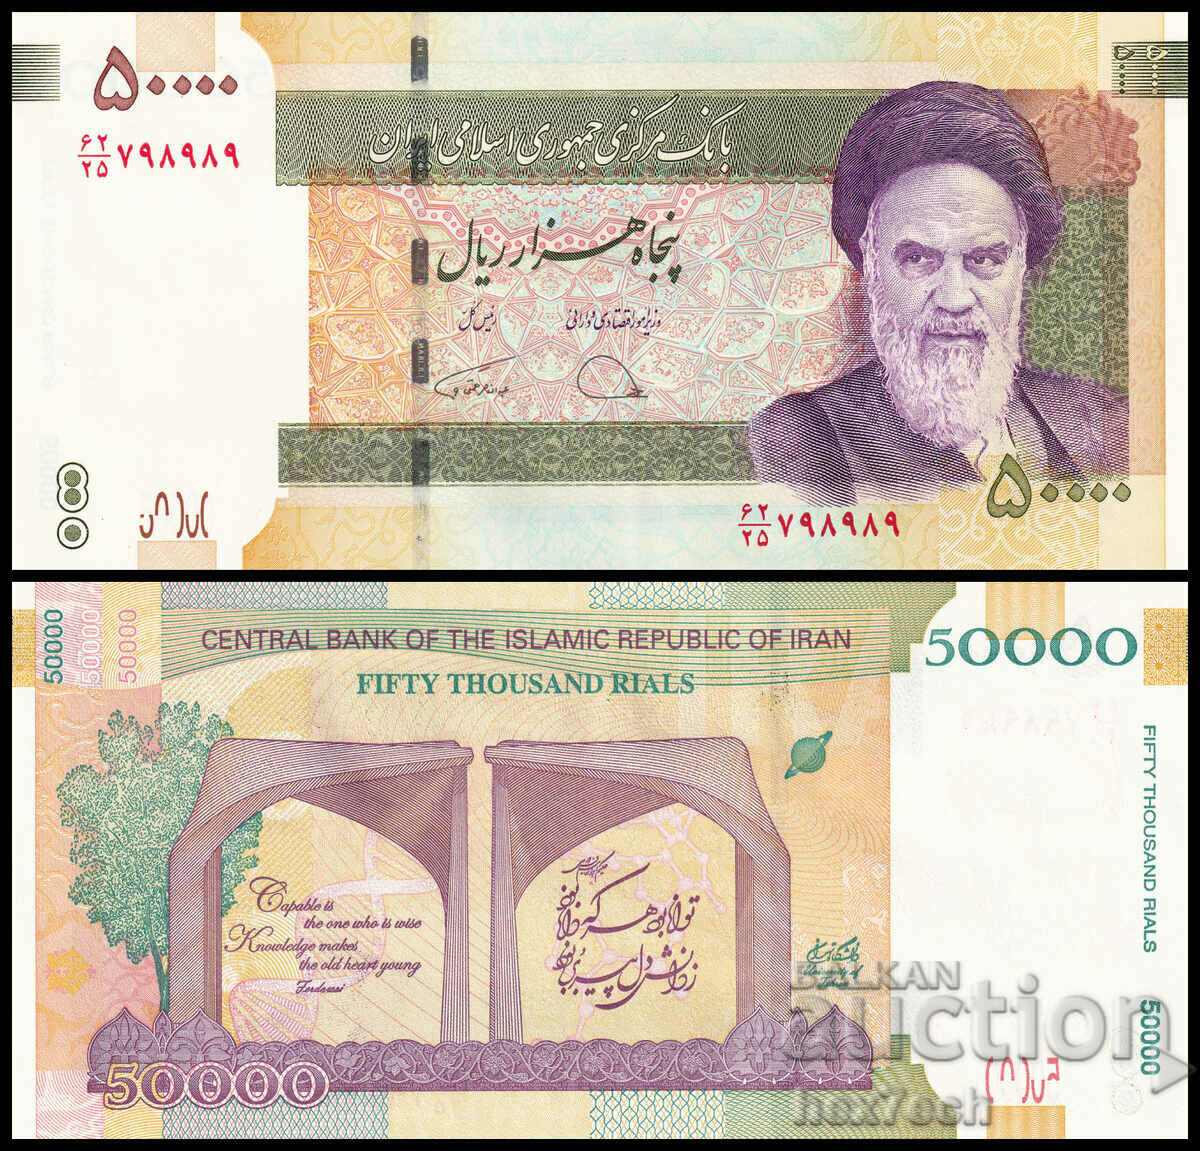 ❤️ ⭐ Иран 2014 50000 риала юбилейна UNC нова ⭐ ❤️